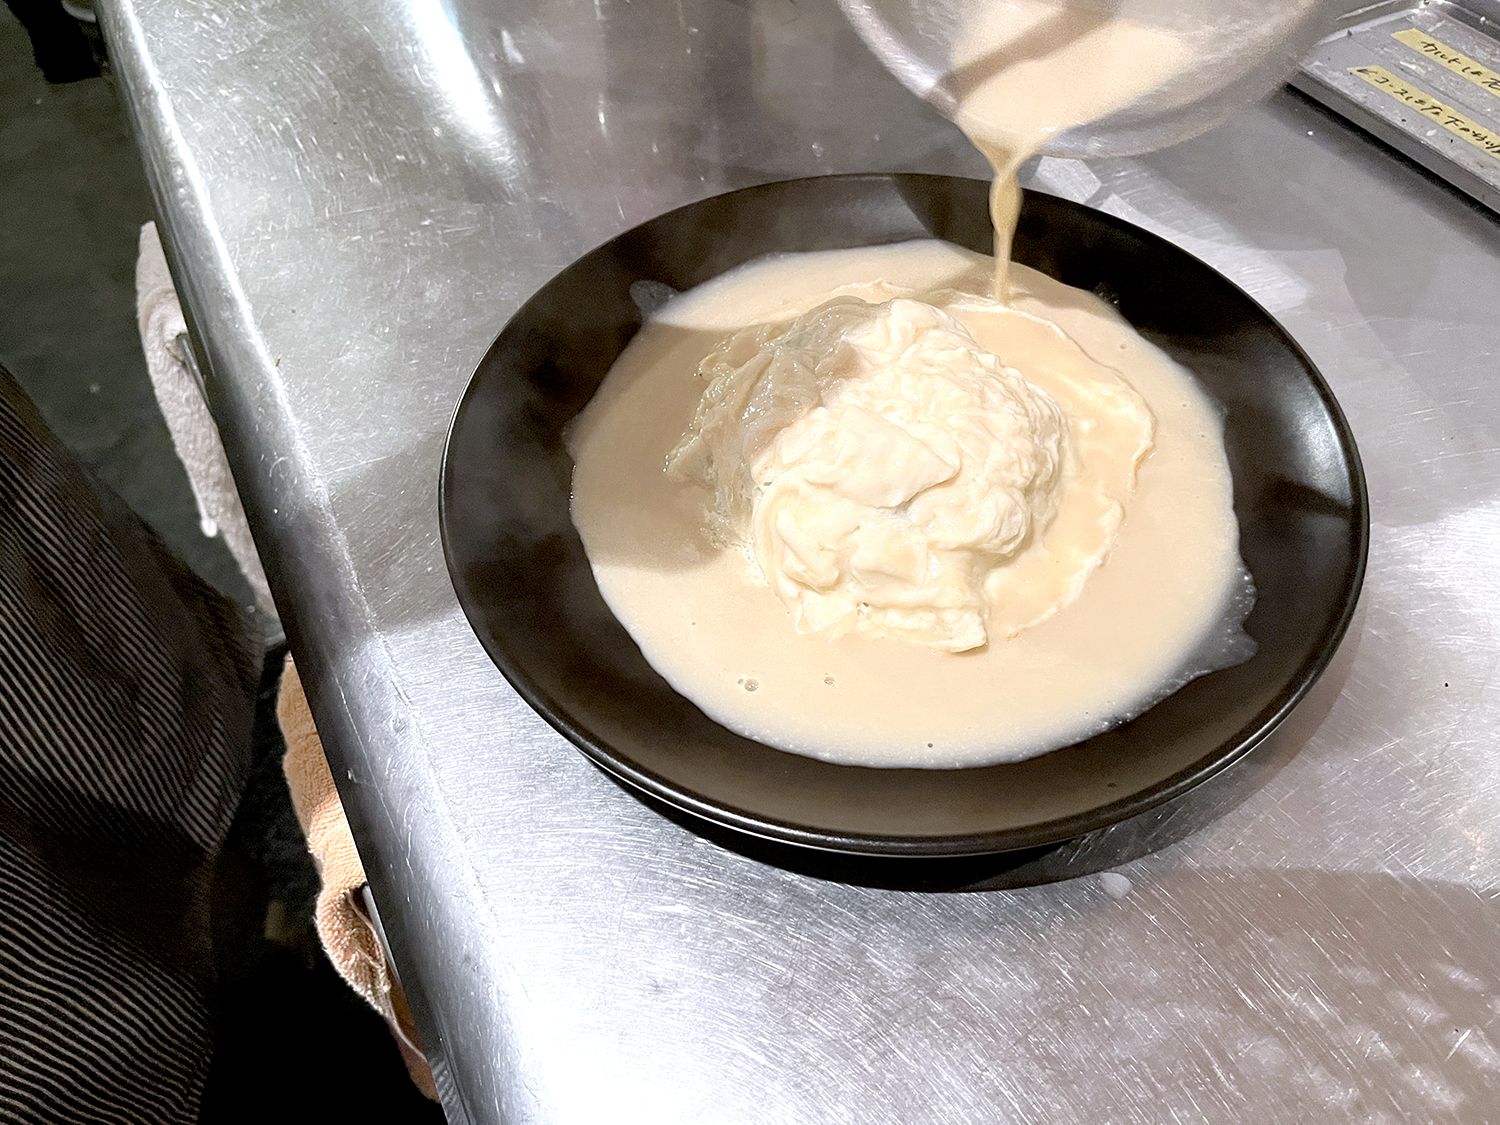 ご飯、卵、ソースと、ここまでは乳白色系のカラーで清純派アイドルのようなコーディネート。バターや生クリームなどがたっぷりでミルキーな濃厚さがある。